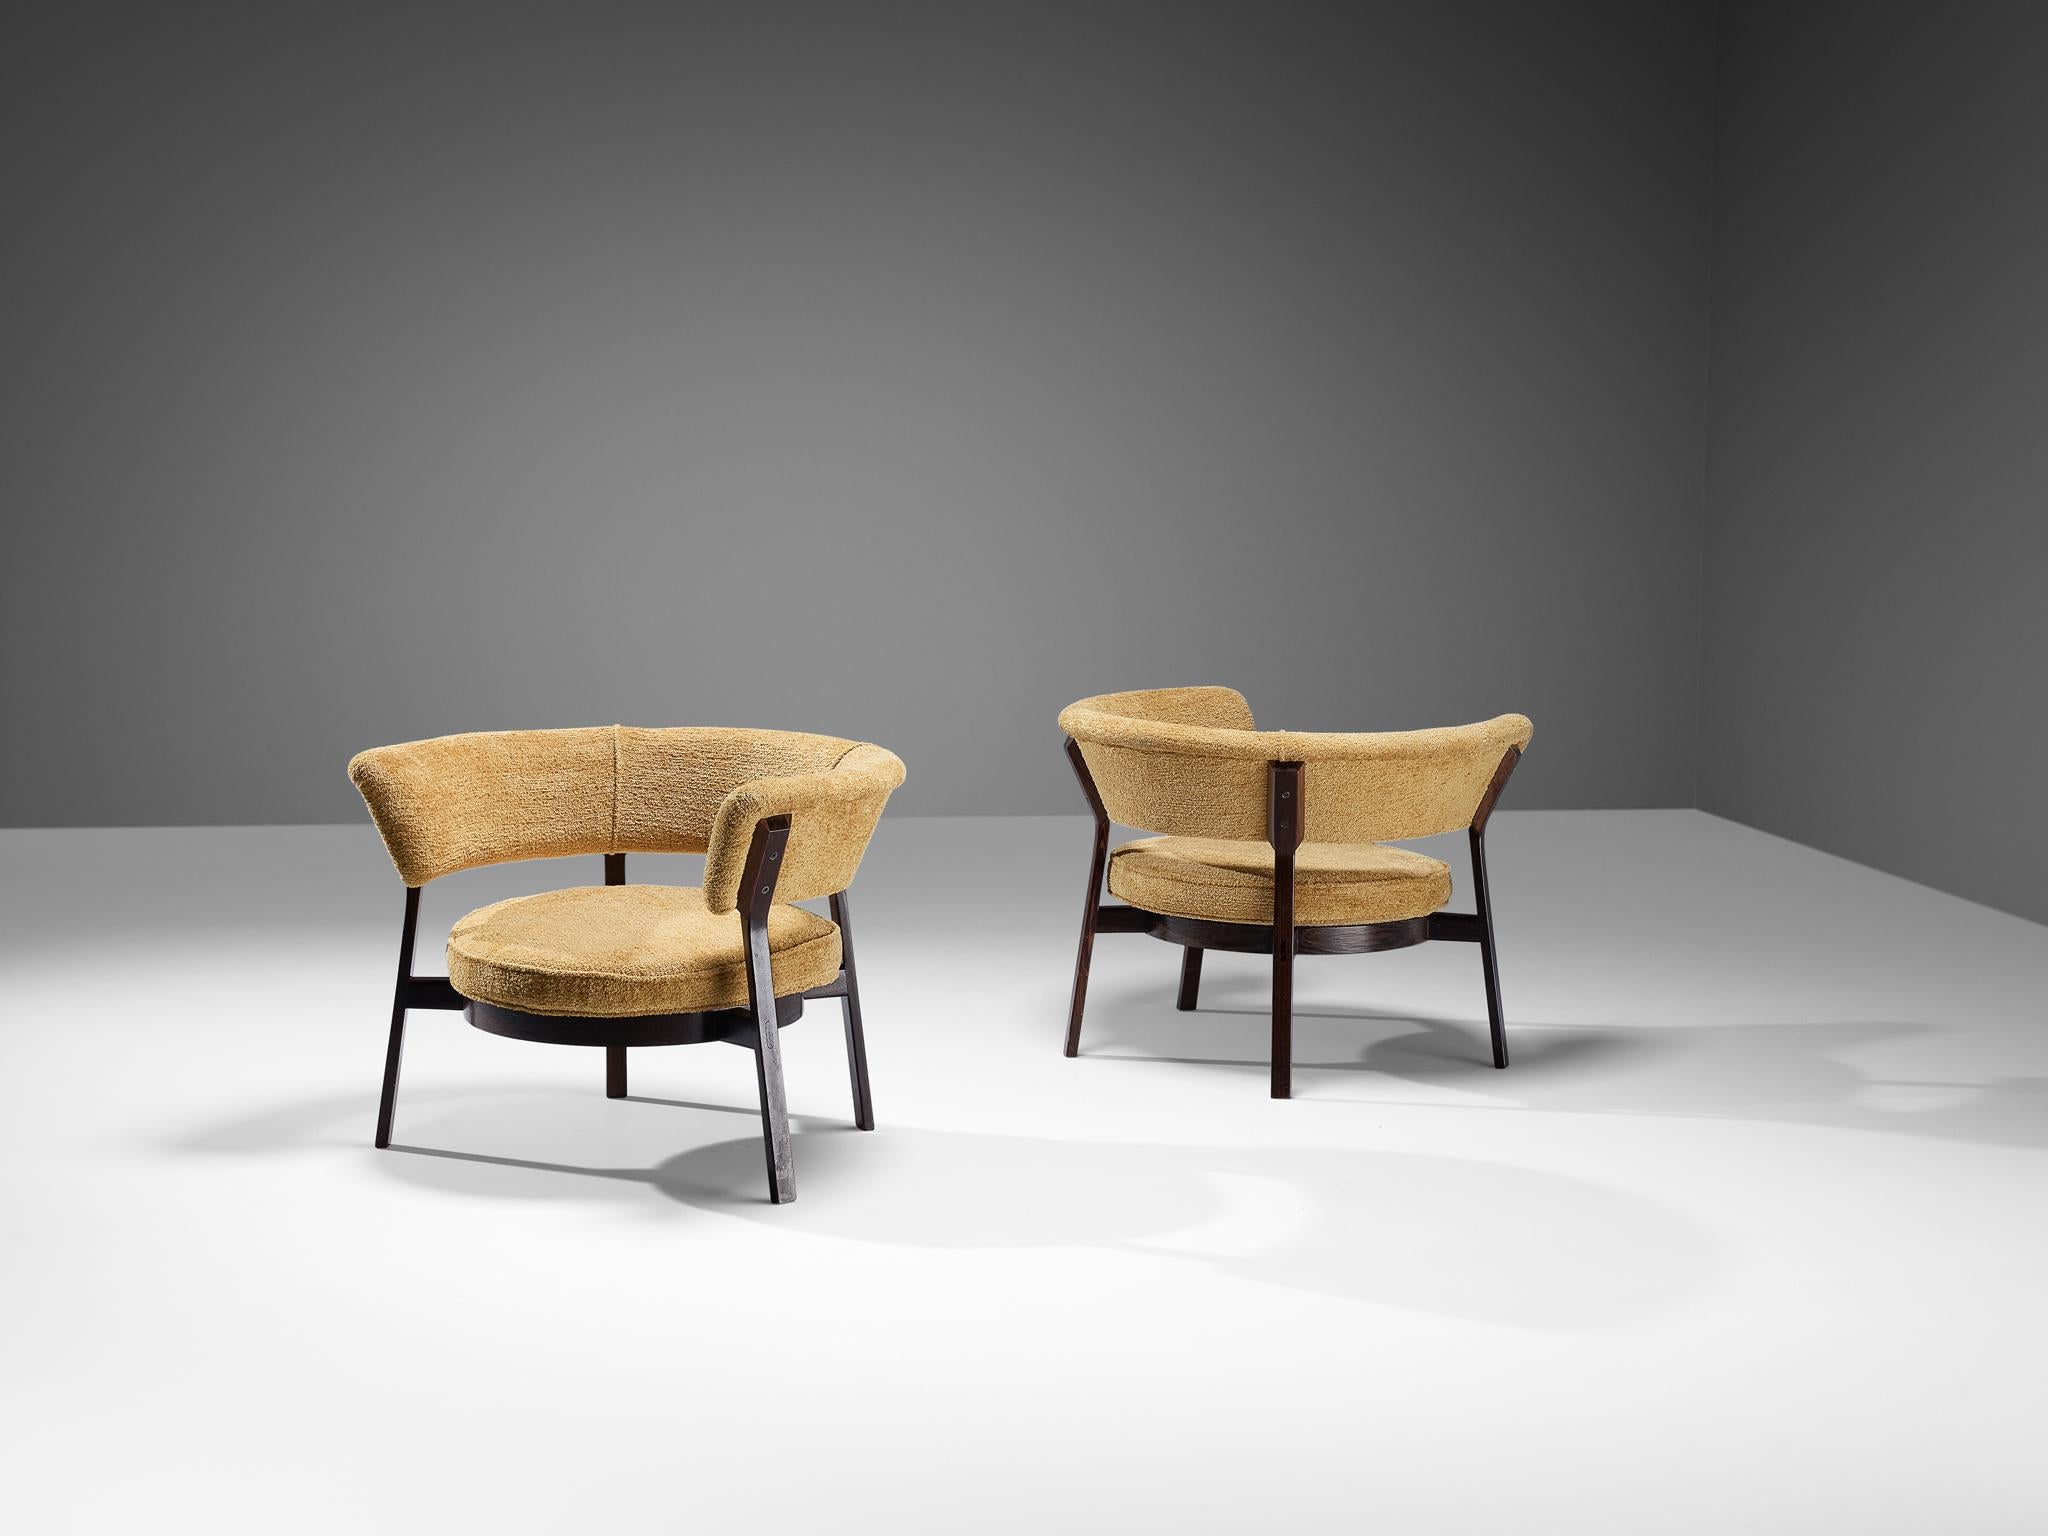 Eugenio Gerli für Tecno, Sesselpaar, Modell 'P28', Wengé, Stoff, Italien, 1958

Eugenio Gerli entwarf 1958 für die italienische Möbelfirma Tecno diese Sessel des Modells 